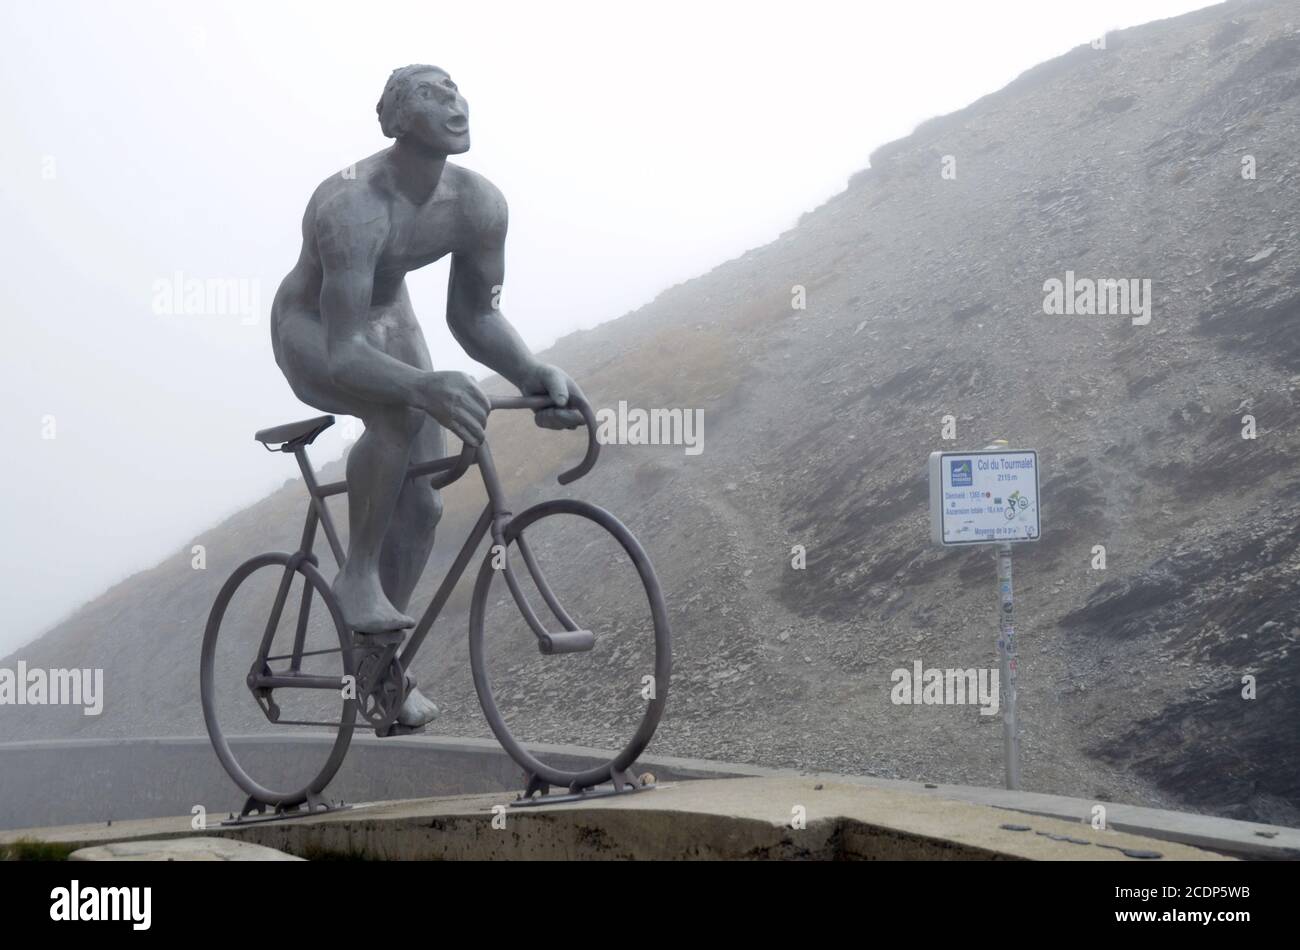 La cima del col du Tourmalet nella catena montuosa dei Pirenei (2115 m), Francia meridionale. Un'opera d'arte rende omaggio ai ciclisti del Tour de France. Foto Stock